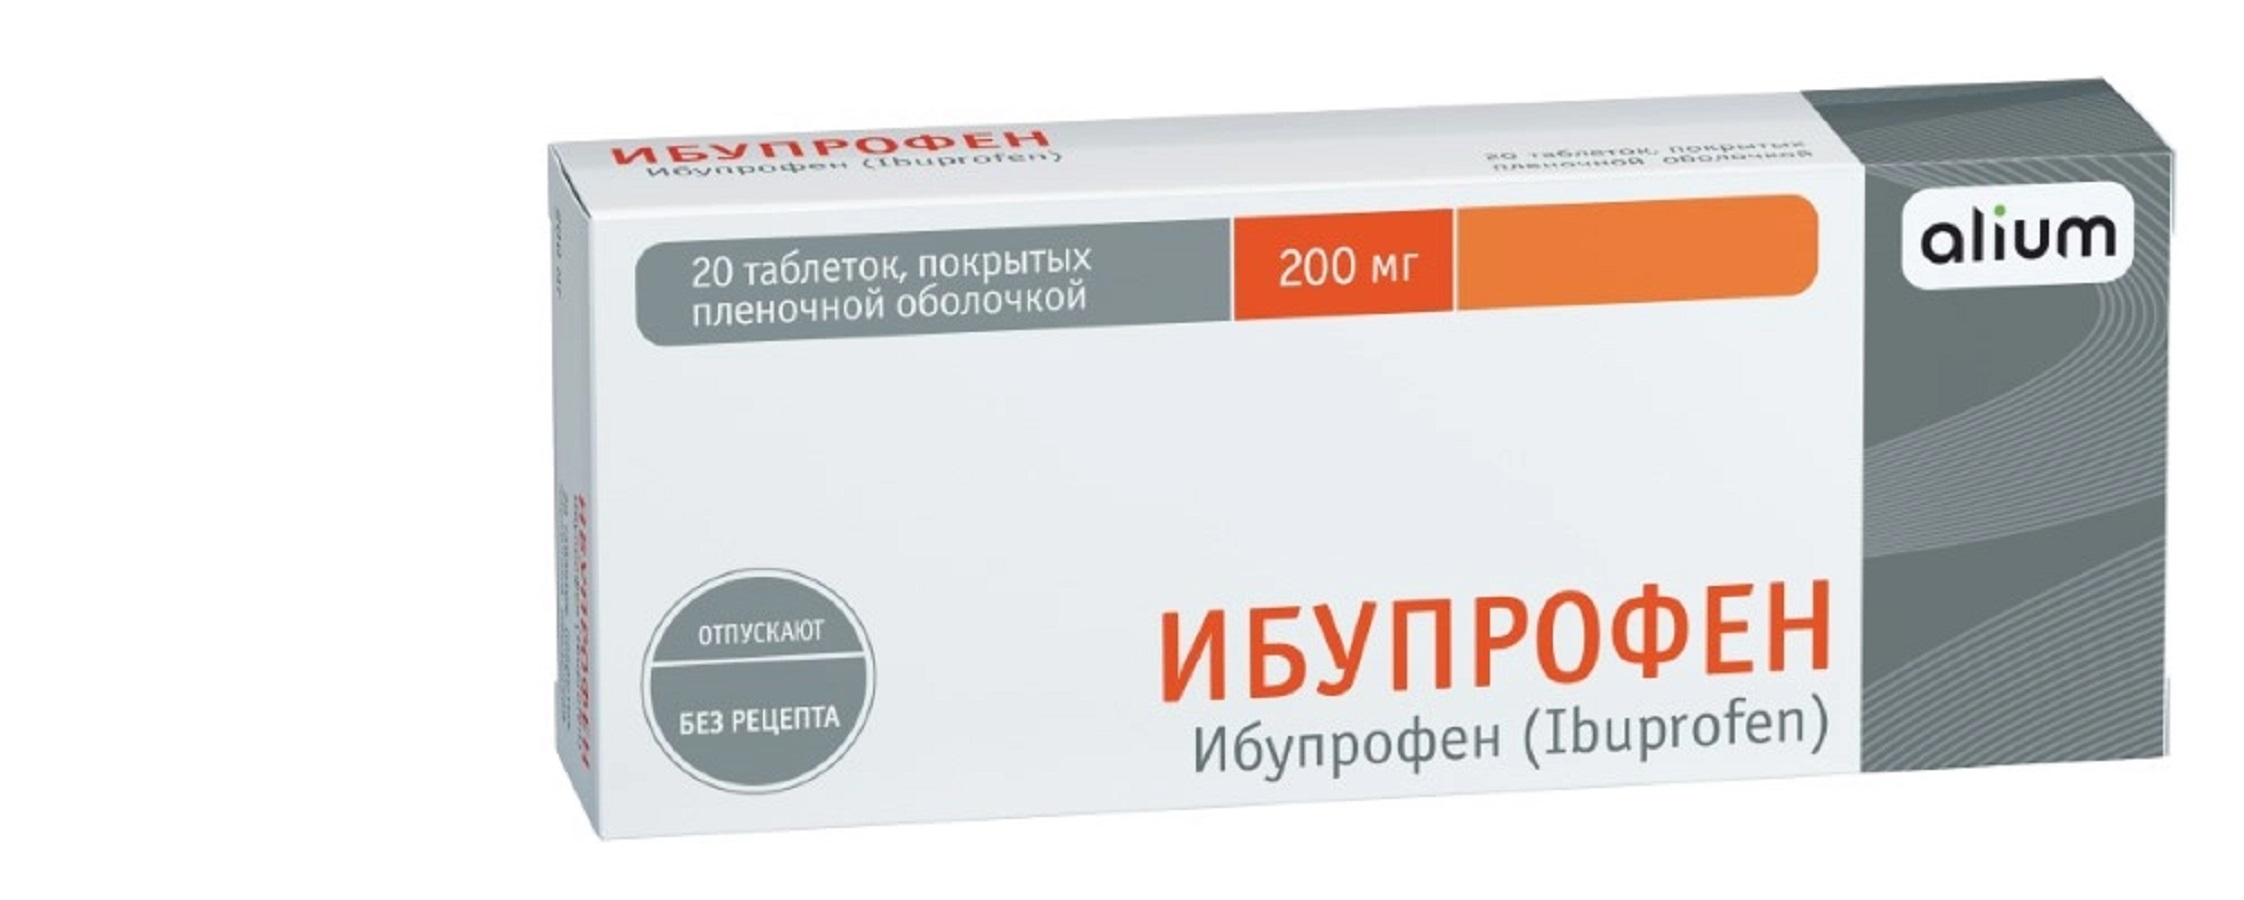 Ибупрофен таблетки, покрытые пленочной оболочкой 200 мг, 20 шт. периндоприл канон таблетки покрытые пленочной оболочкой 10 мг 30 шт